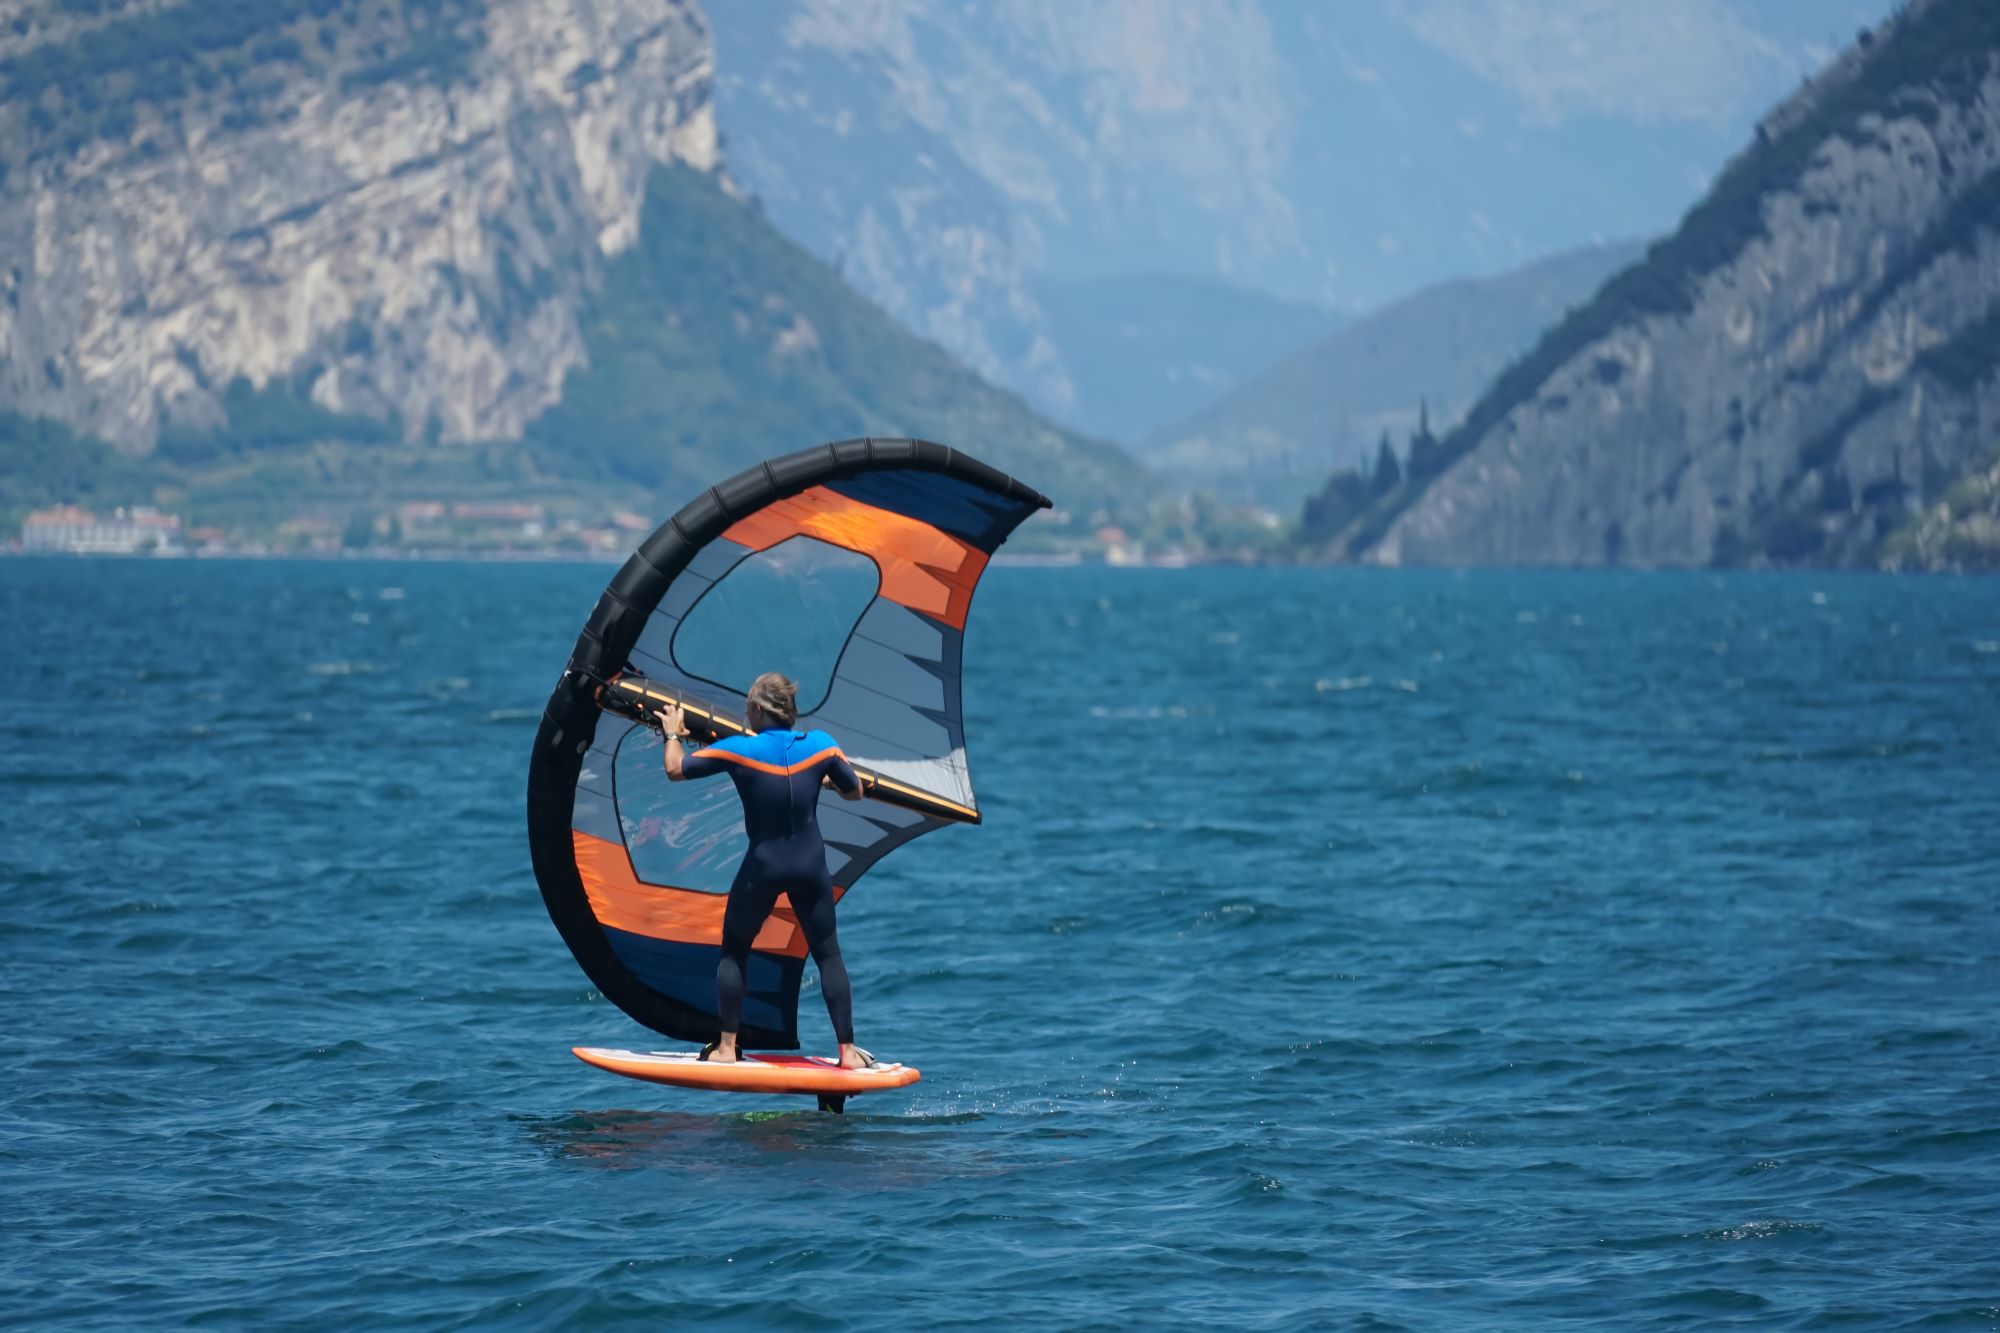 Incredibile pratica di wing foil sul Lago di Garda a Torbole, un paradiso per gli amanti degli sport acquatici